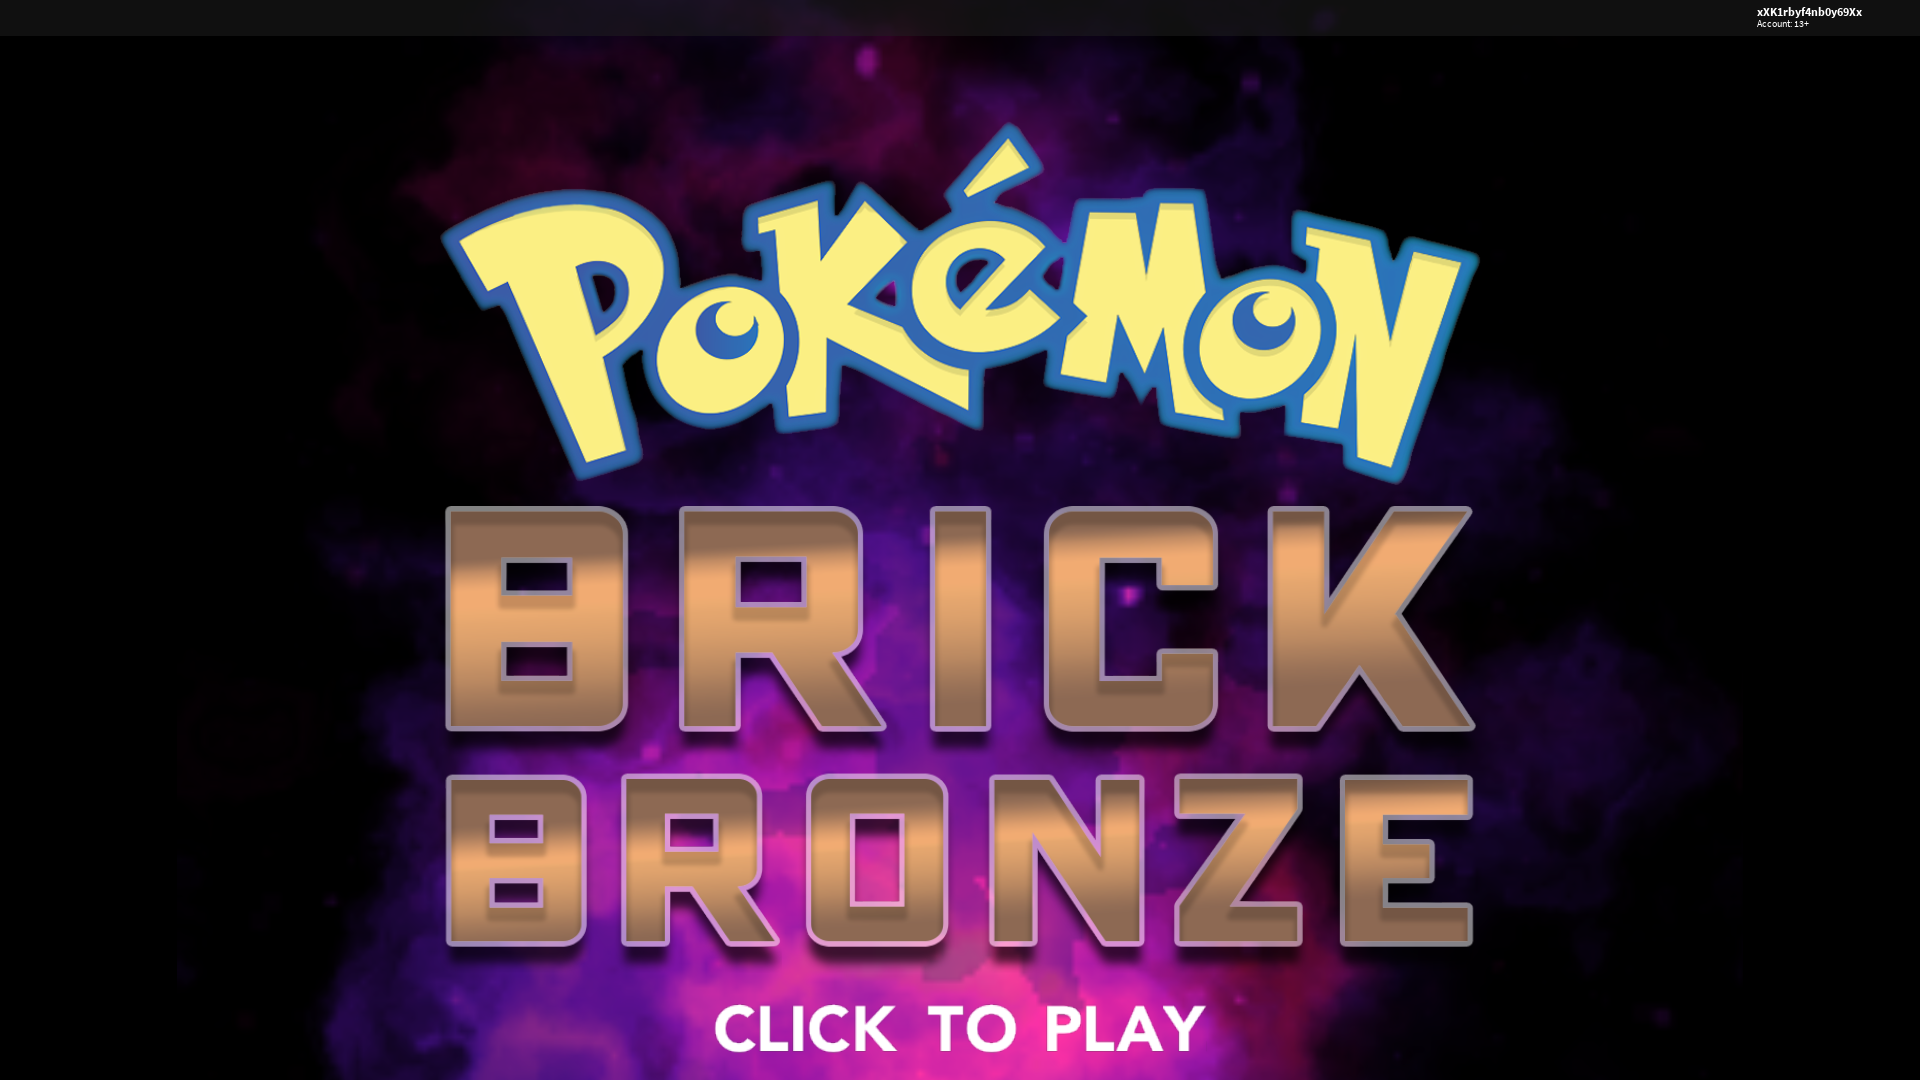 Pokemon Brick Bronze Logo Summer 2017 Remake by RealMrbobbilly on DeviantArt